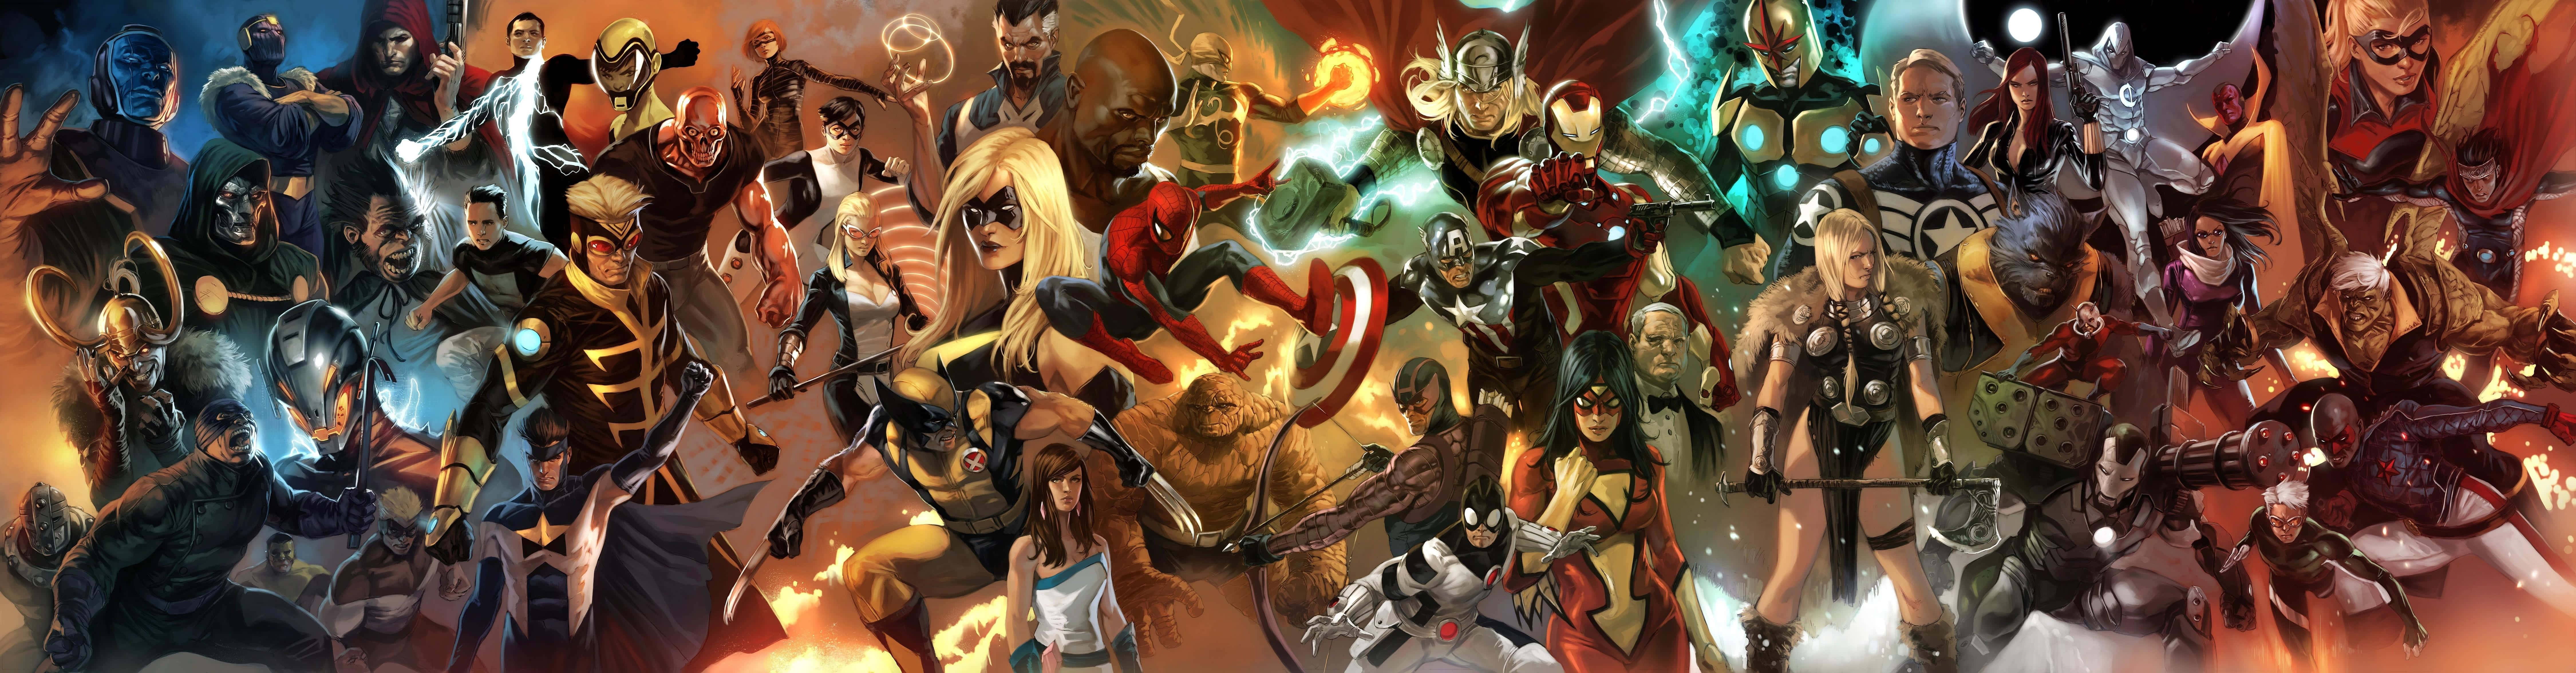 "The Dangerous Villains of Iron Man". Wallpaper